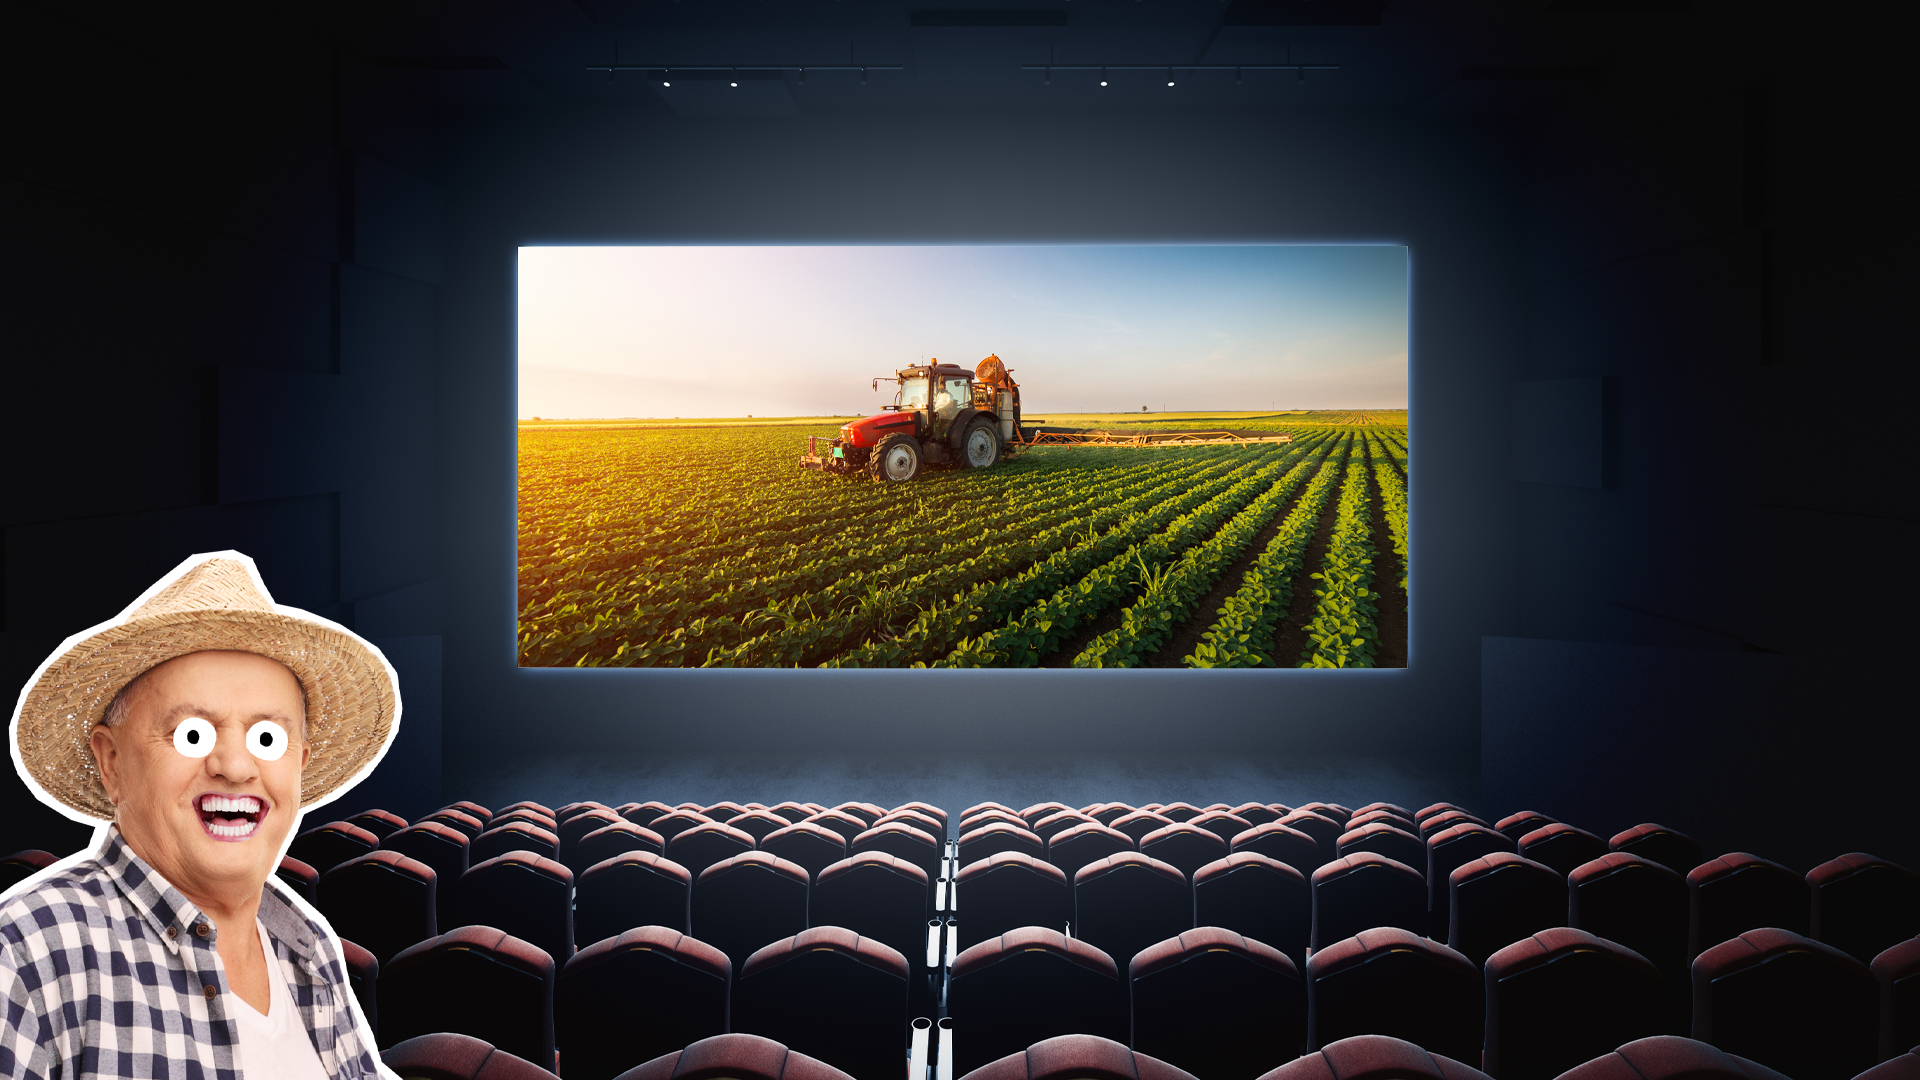 A farmer at the cinema